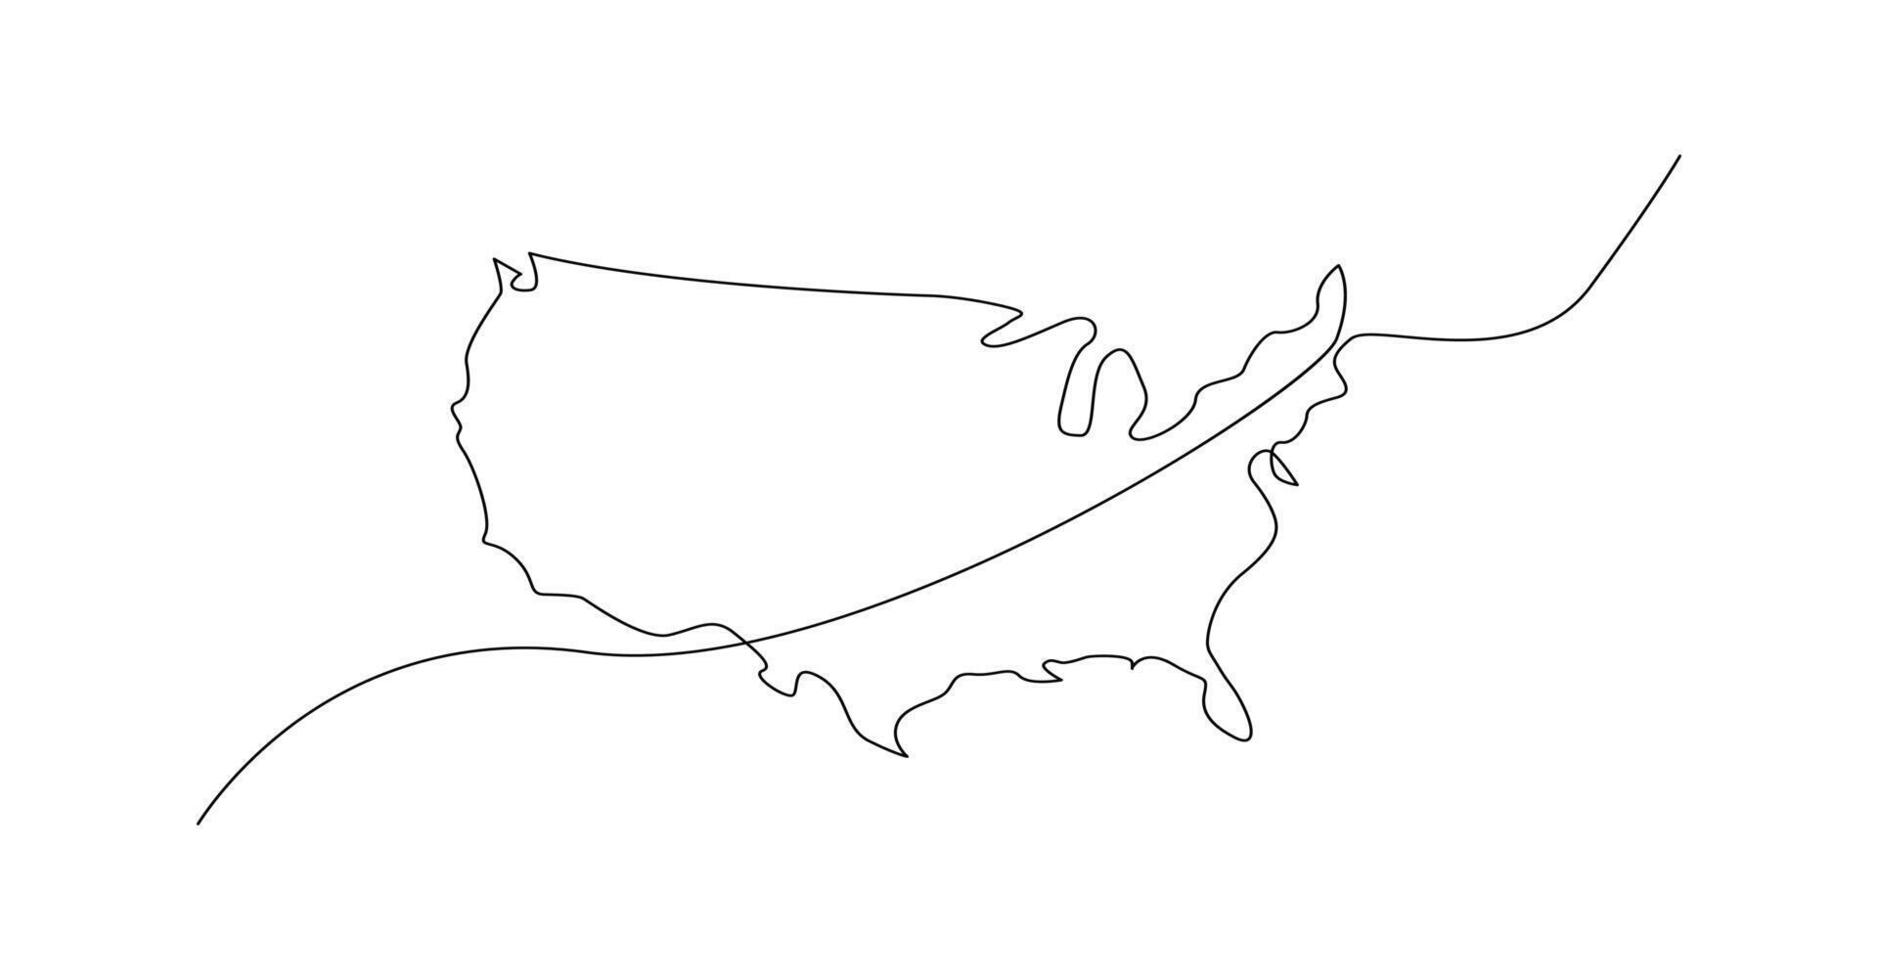 EUA mapa 1 contínuo linha desenho. país solteiro linha contorno mapa, forma do país. vetor